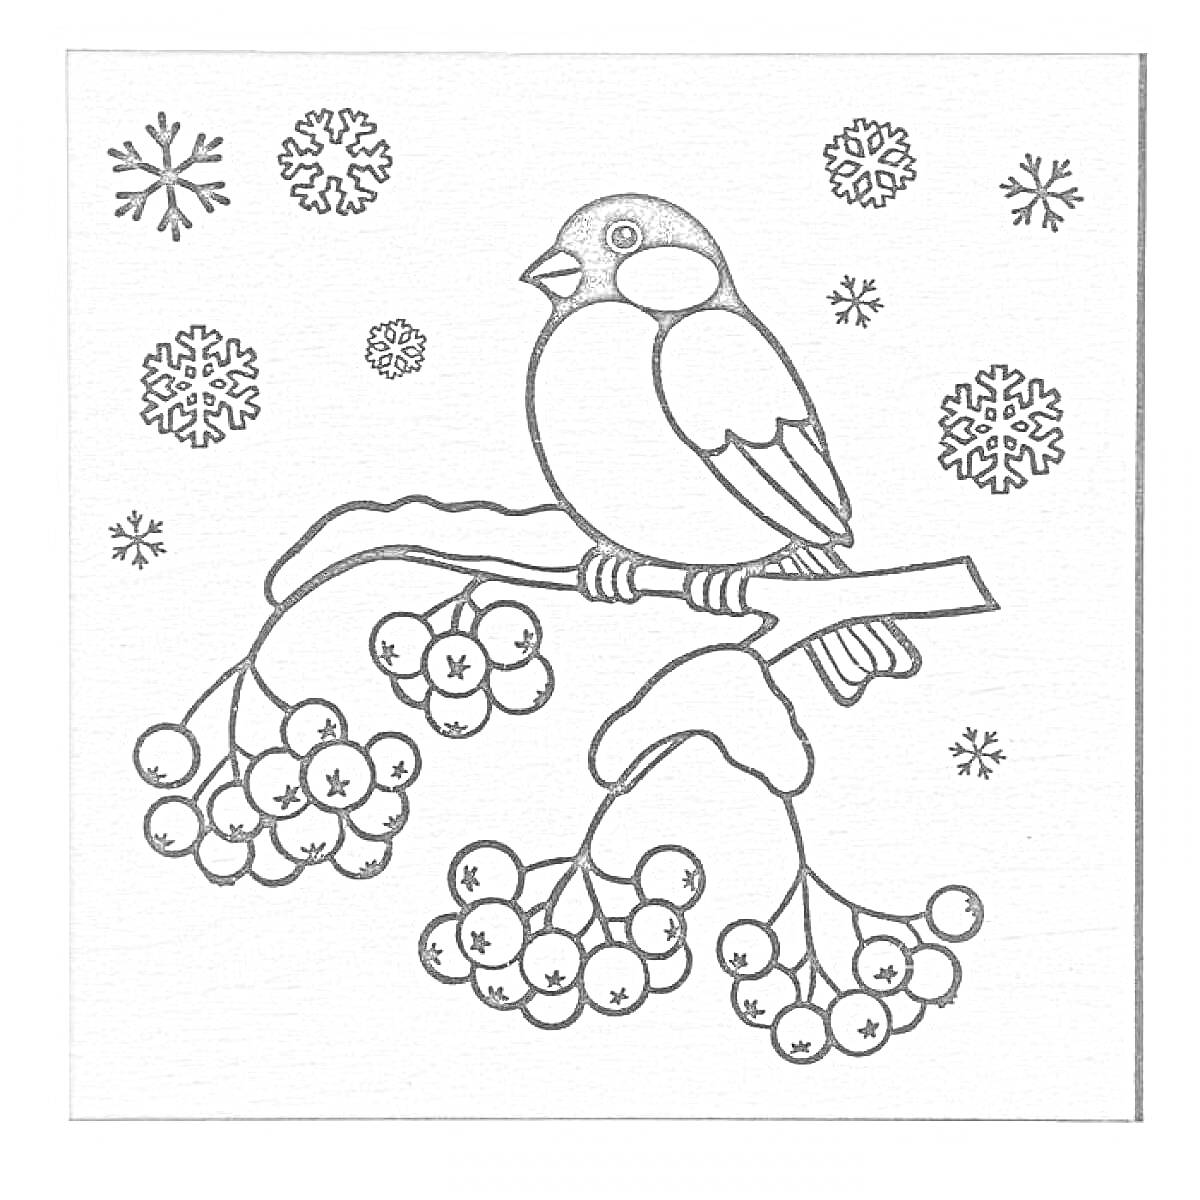 Раскраска Снегирь на ветке рябины зимой с падающим снегом и снежинками